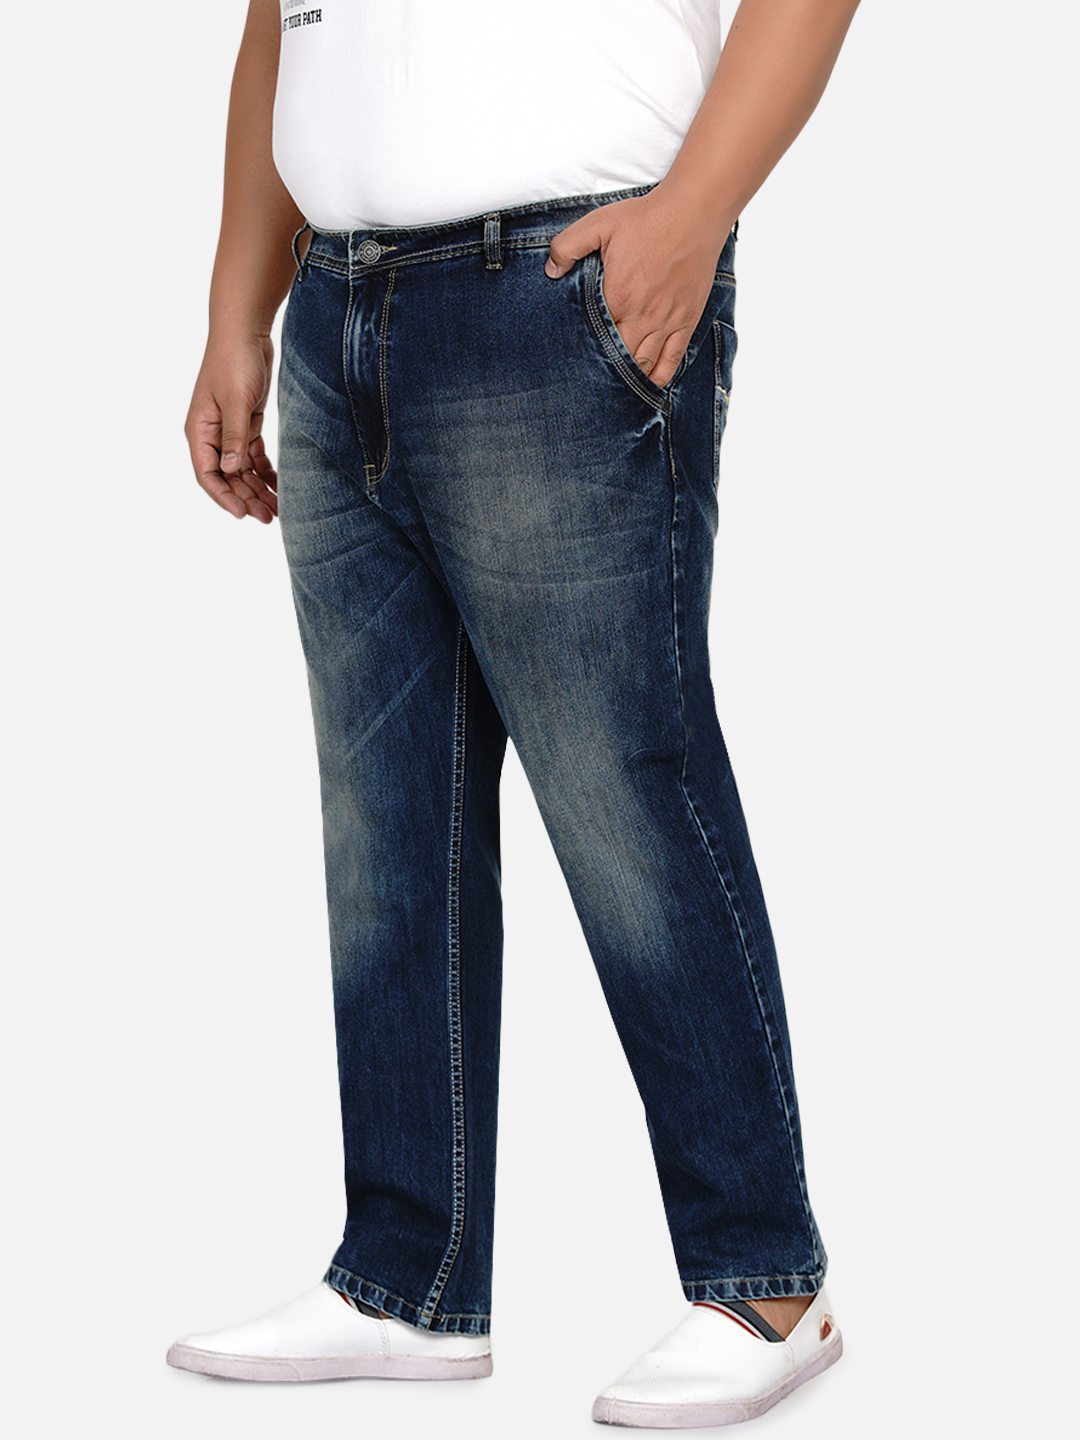 affordables/jeans/EJPJ25002/ejpj25002-5.jpg